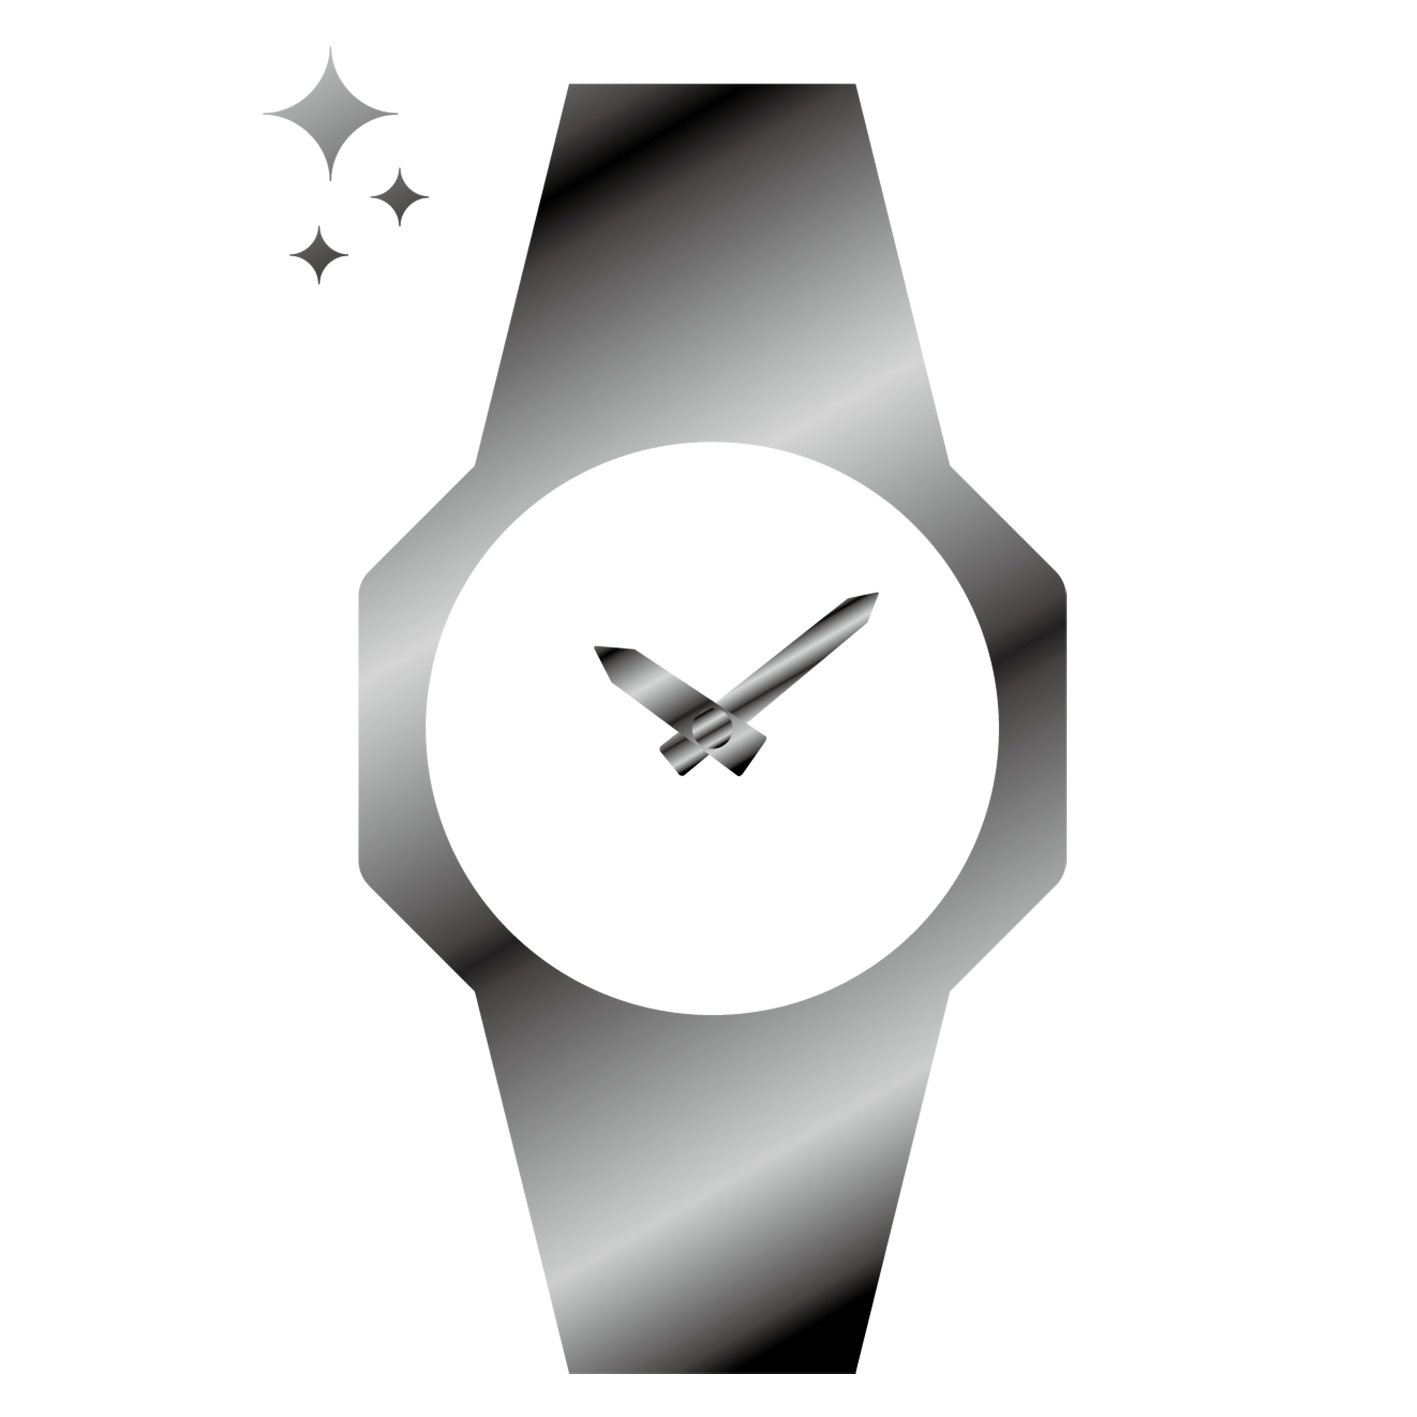 オシアナス OCW-T2600J-1AJF【国内正規品】【ノベルティ付・ｷﾞﾌﾄ包装無料】OCEANUS 電波 ソーラー メンズ 腕時計画像